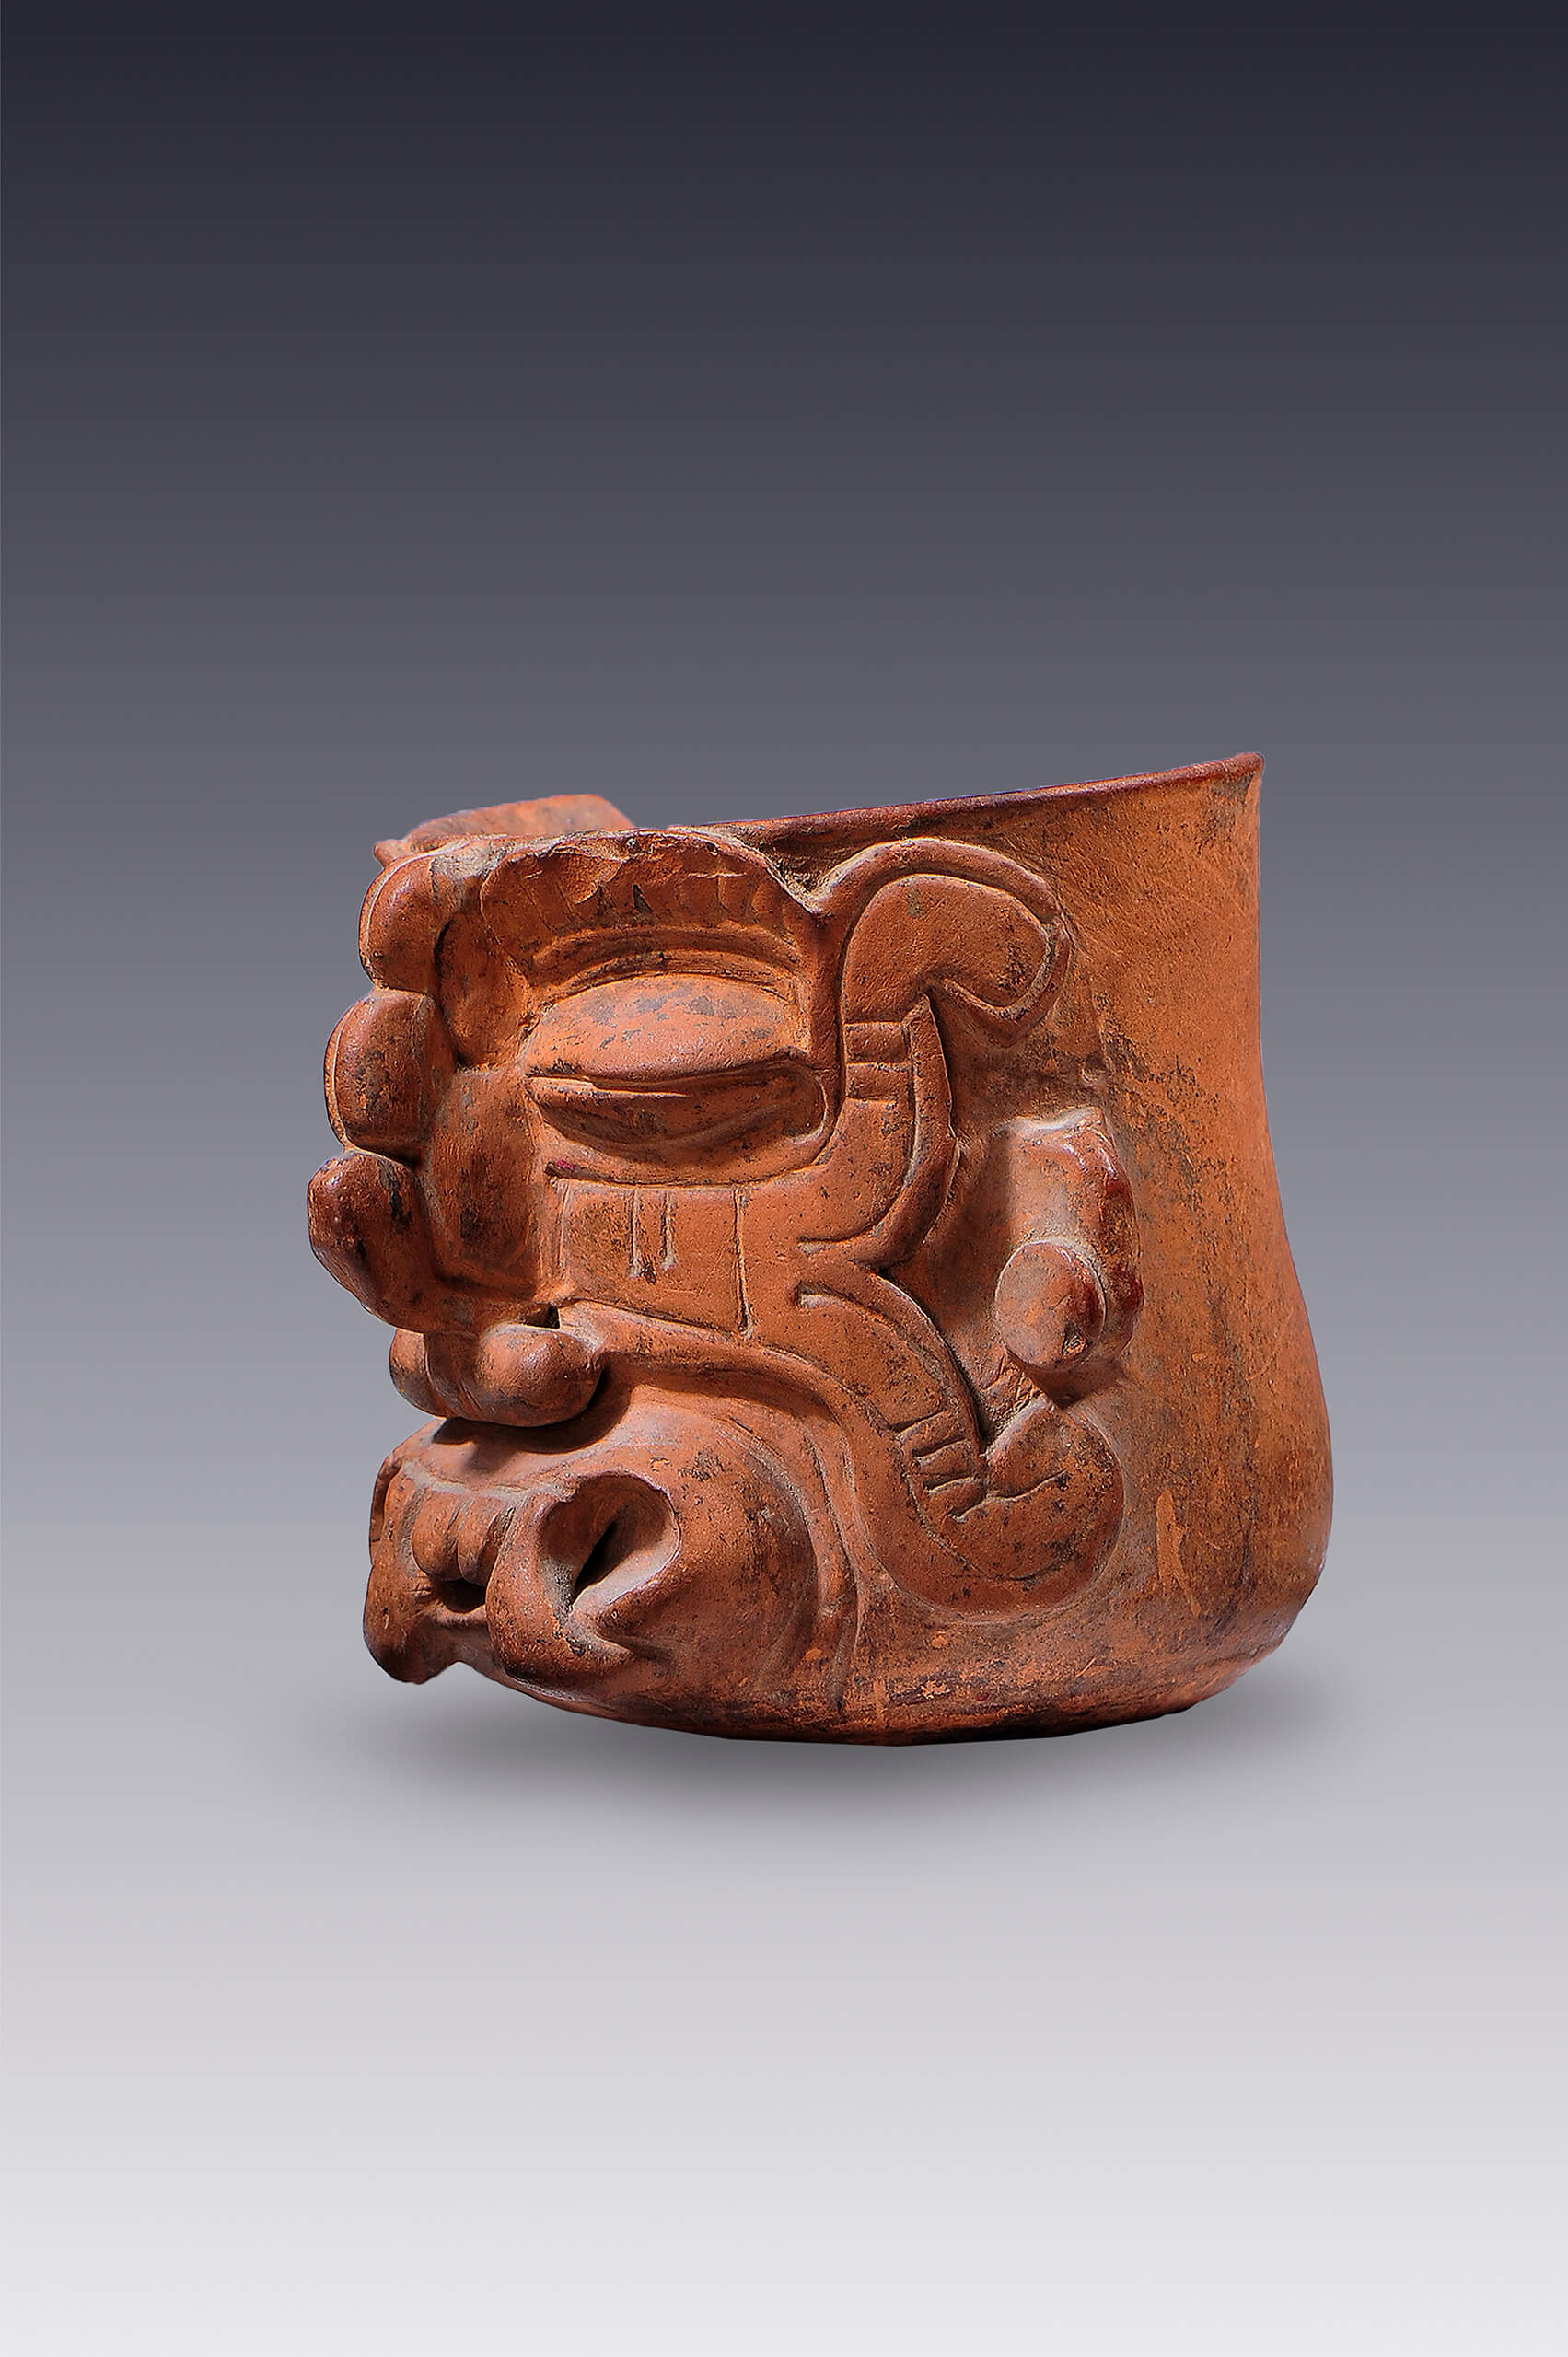 Vaso-efigie con representación de Tláloc, ¿Cocijo? | El tiempo en las cosas II. Salas de Arte Contemporáneo | Museo Amparo, Puebla